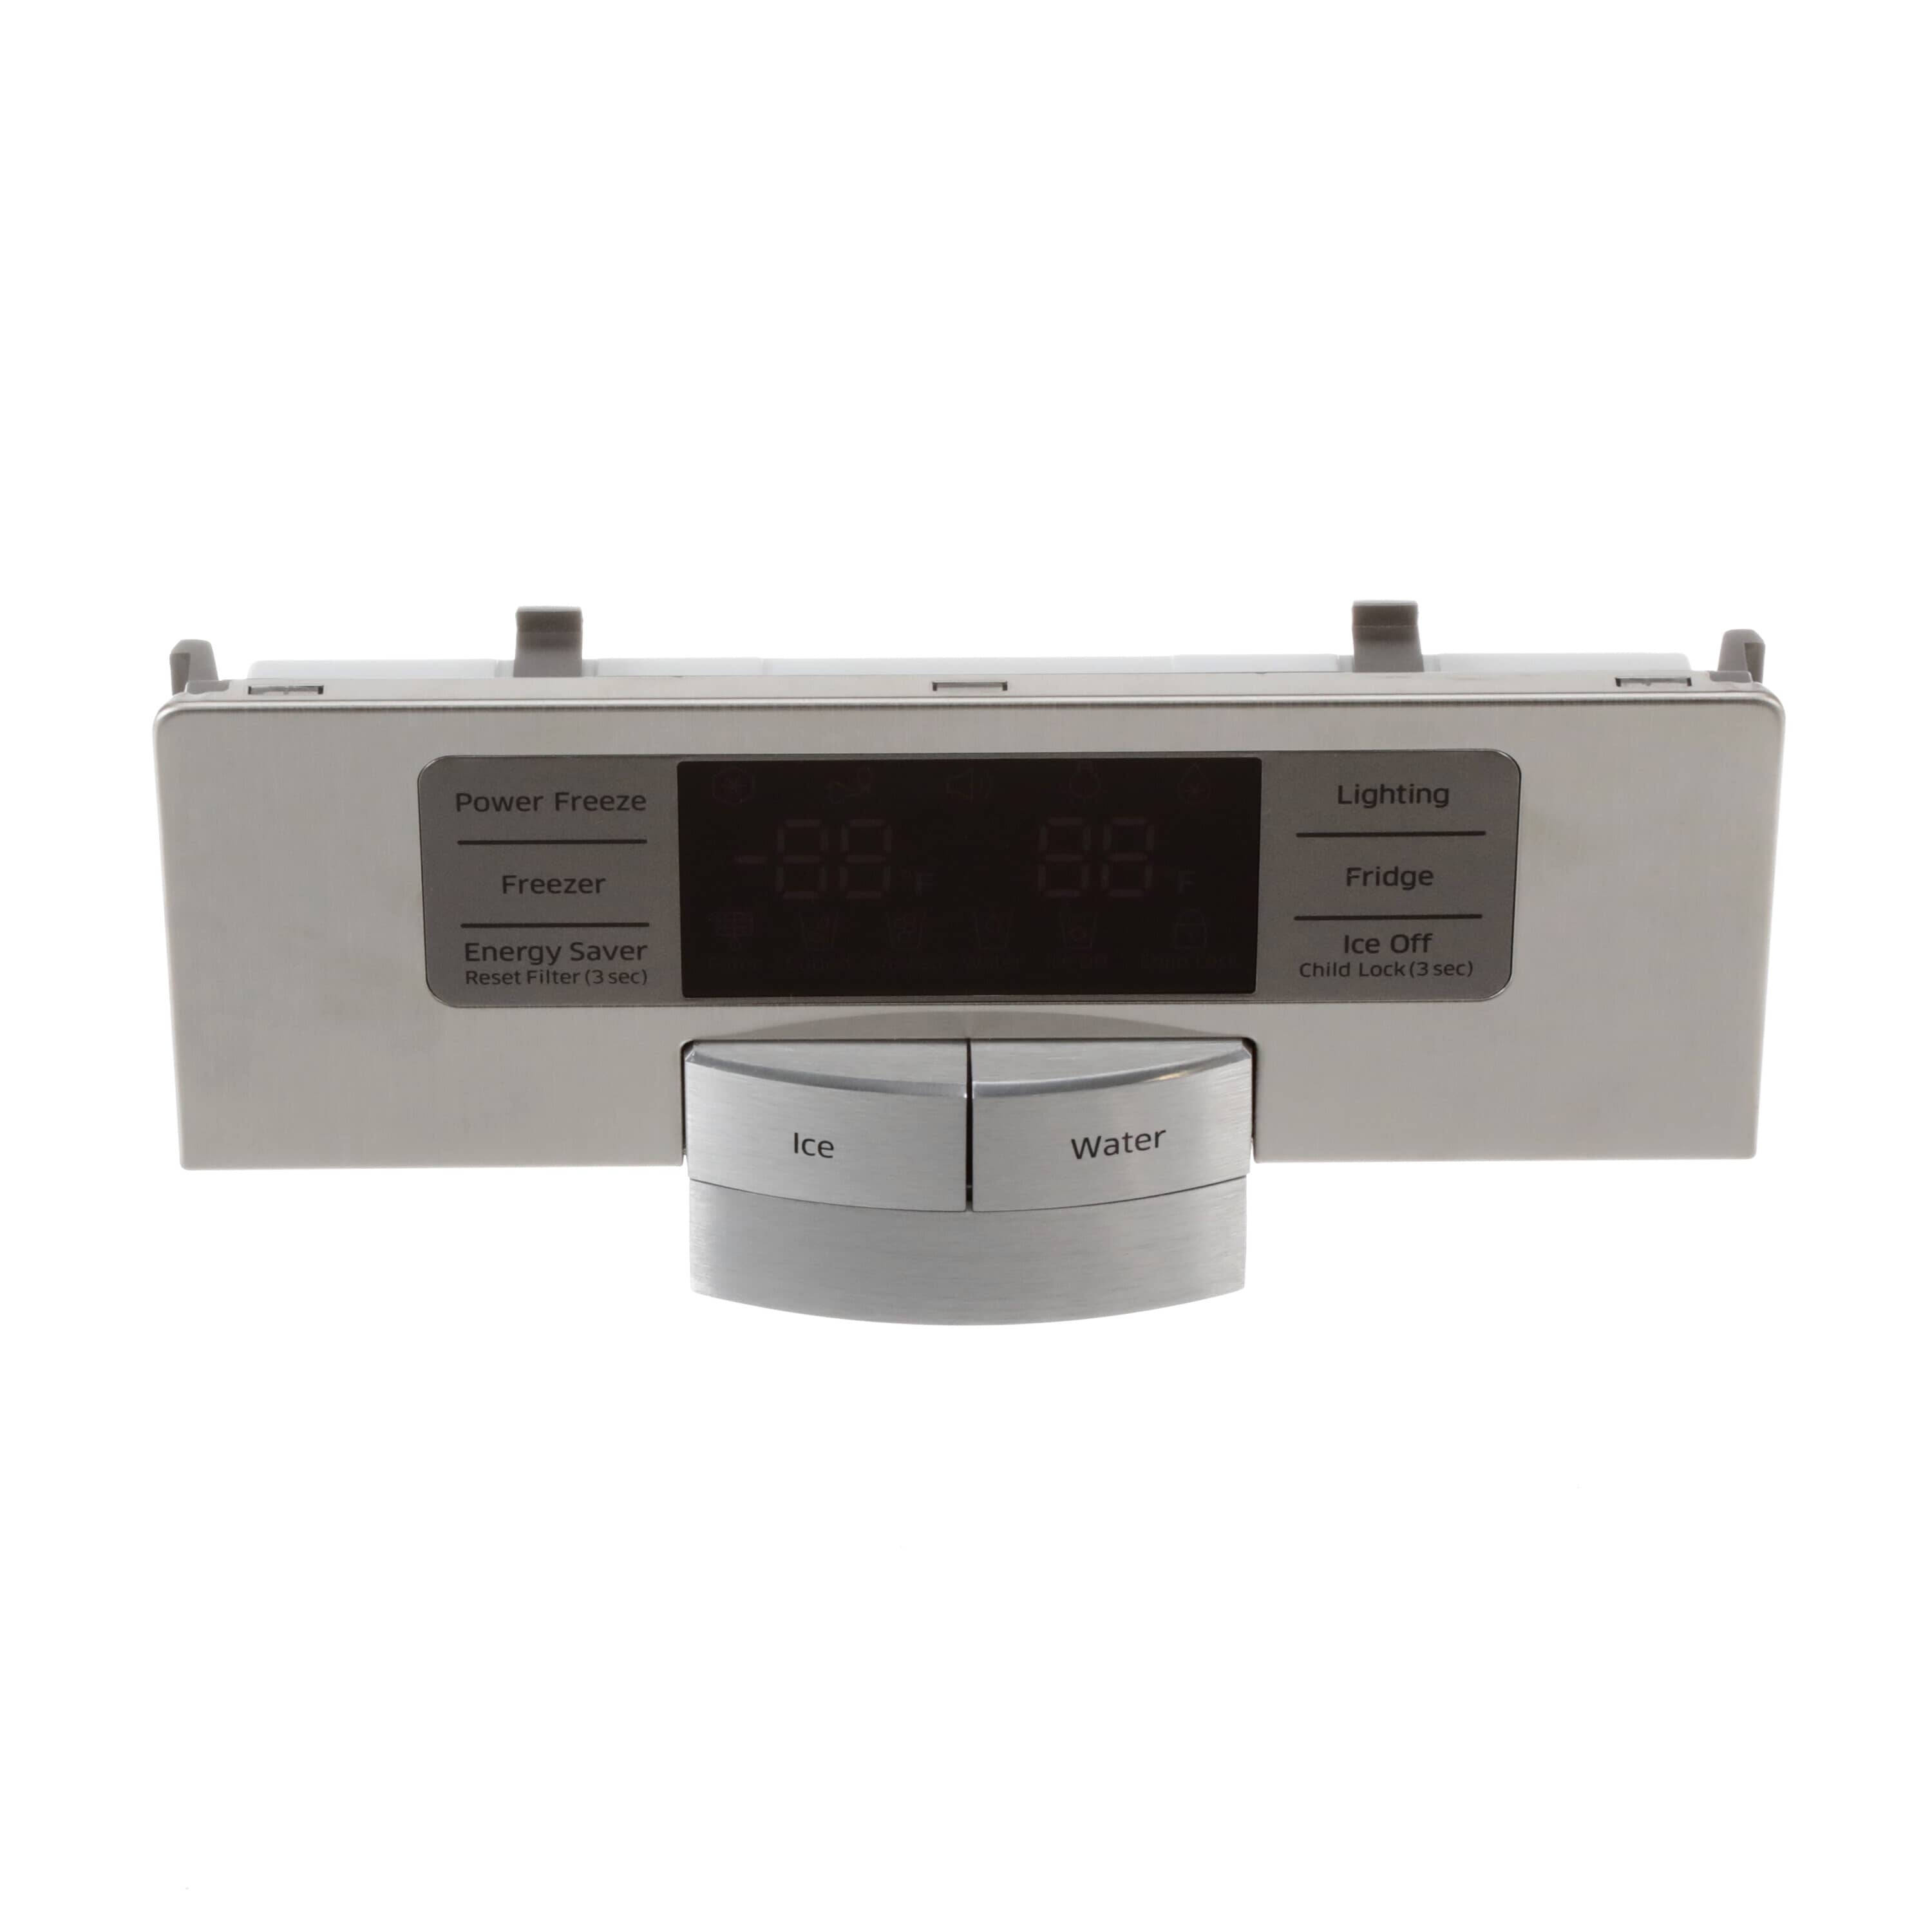 Samsung DA97-06477Z Refrigerator Dispenser Control Panel